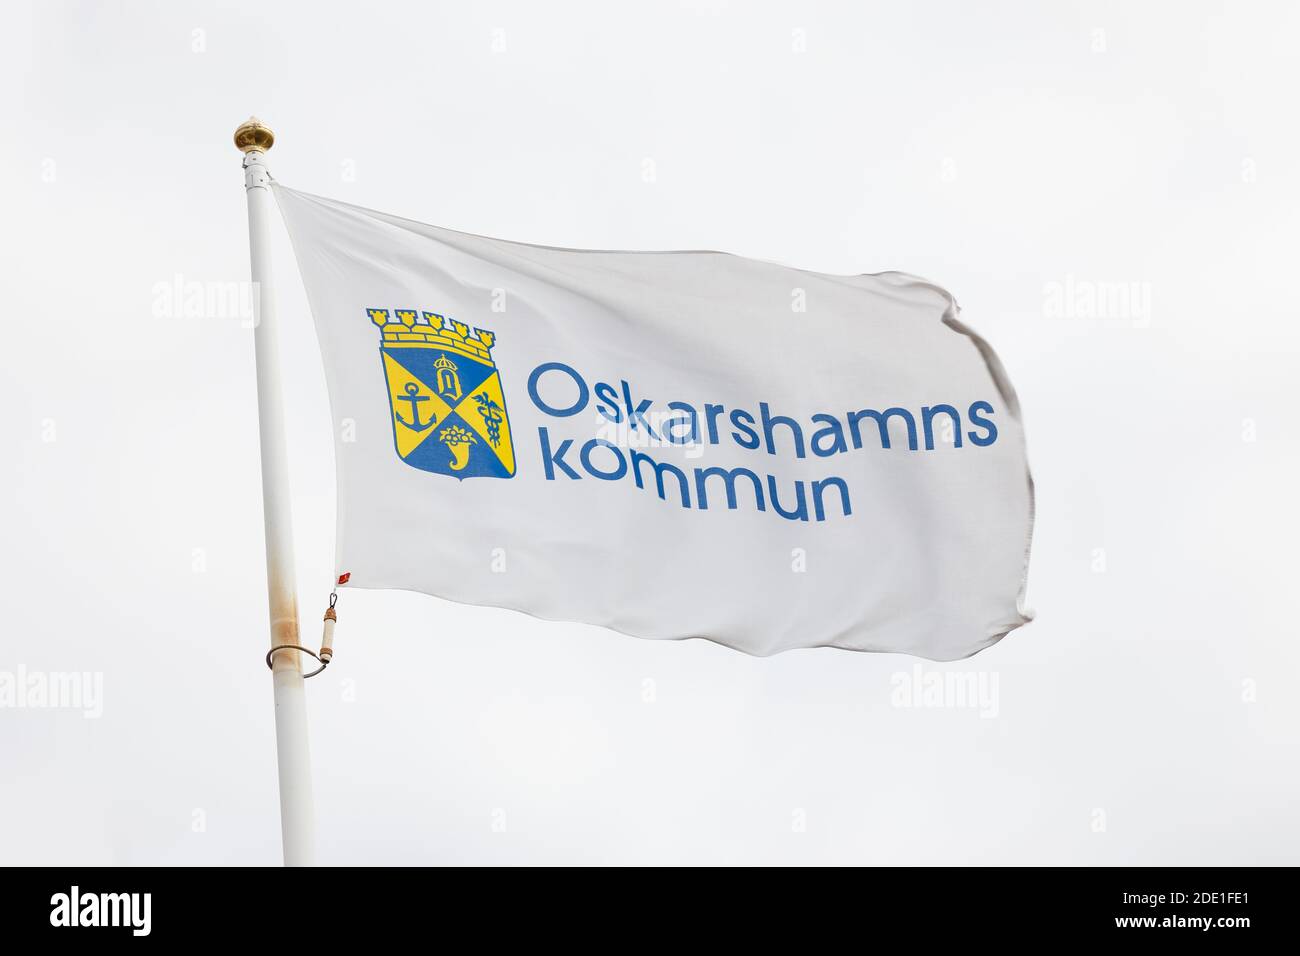 Oskarshamn, Sweden - August 22, 2017: The Oskarshamn municipality flag against a bright sky. Stock Photo